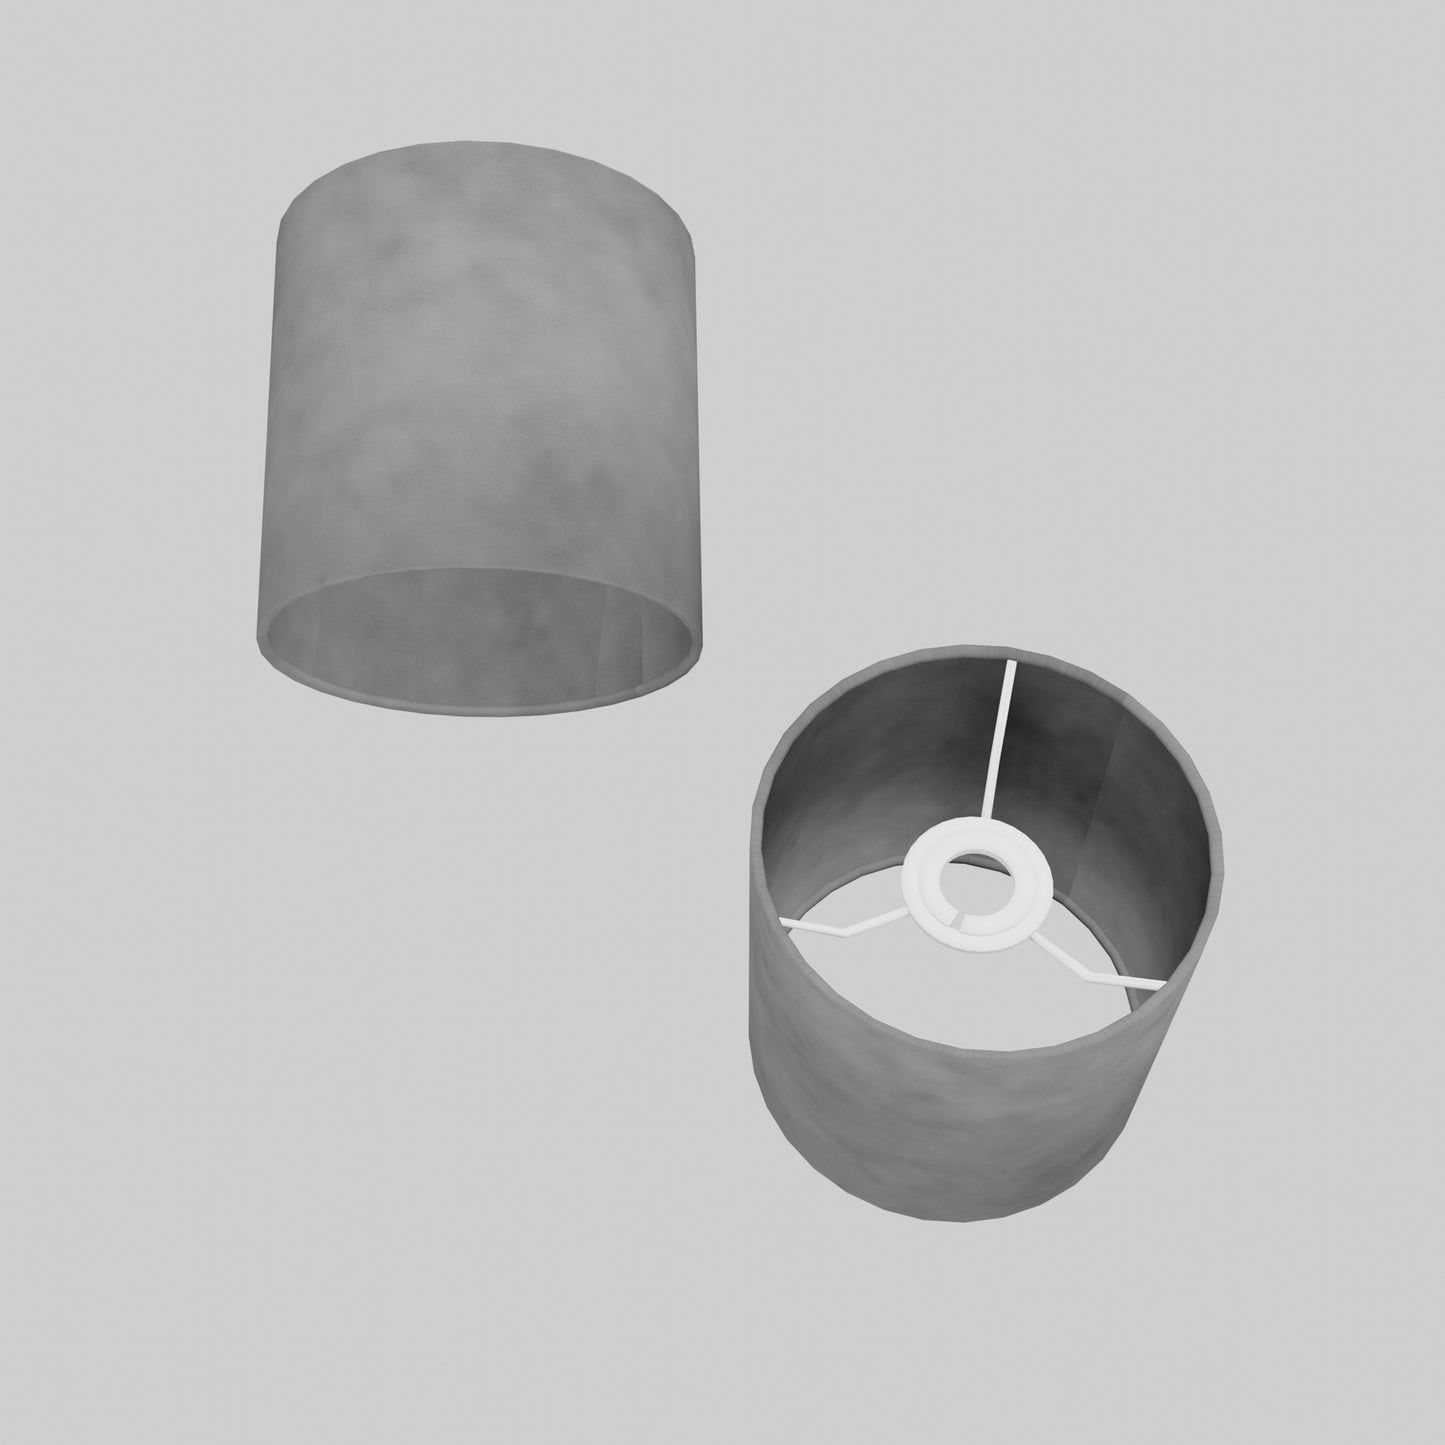 Drum Lamp Shade - P53 ~ Pewter Grey Lokta, 15cm(diameter)